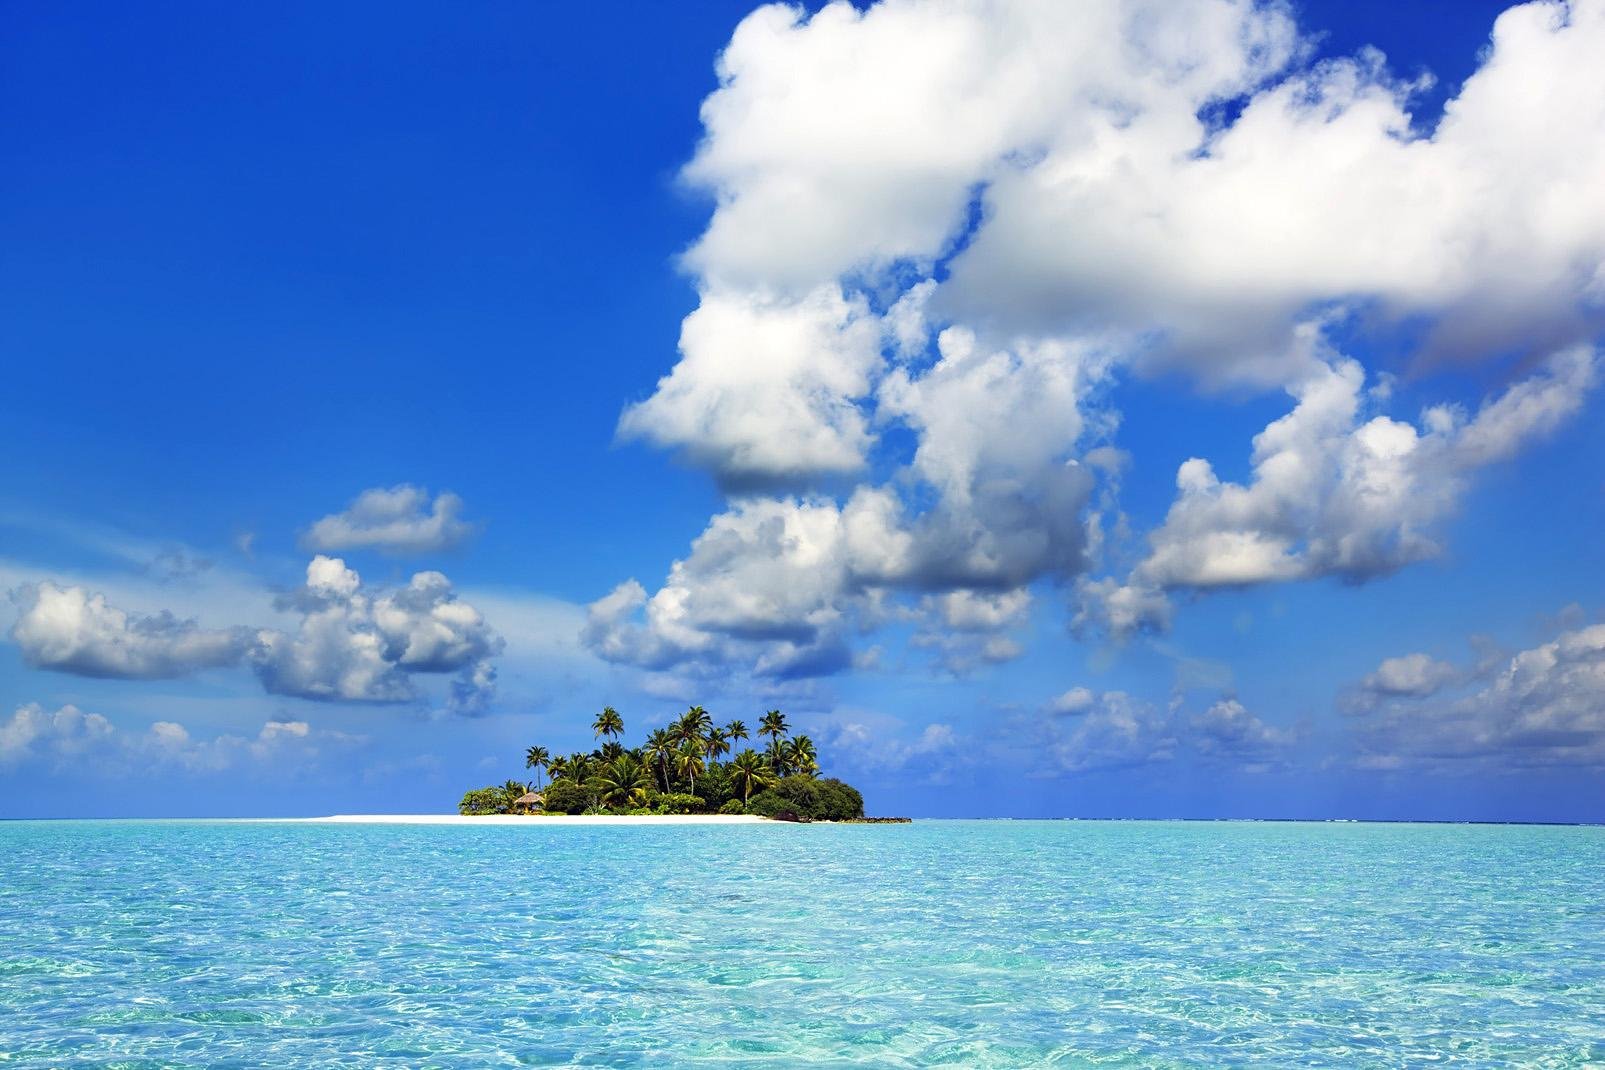 L'atollo di Baa è situato a nord ovest delle Maldive, molto sopra l'atollo di Ari Nord. E' costituito da 15 isole-hotel, tra cui la nota Soneva Fushi, famosa per il suo lusso in stile Robinson Crusoe. Abbiamo anche trovato simpatico e piacevole il Coco Palm Dhuni Kolhu. 

Vi invitiamo a sognare leggendo le nostre schede, e chissà magari che il sogno non...diventi realtà! Ci sono tutti gli ingredienti ...